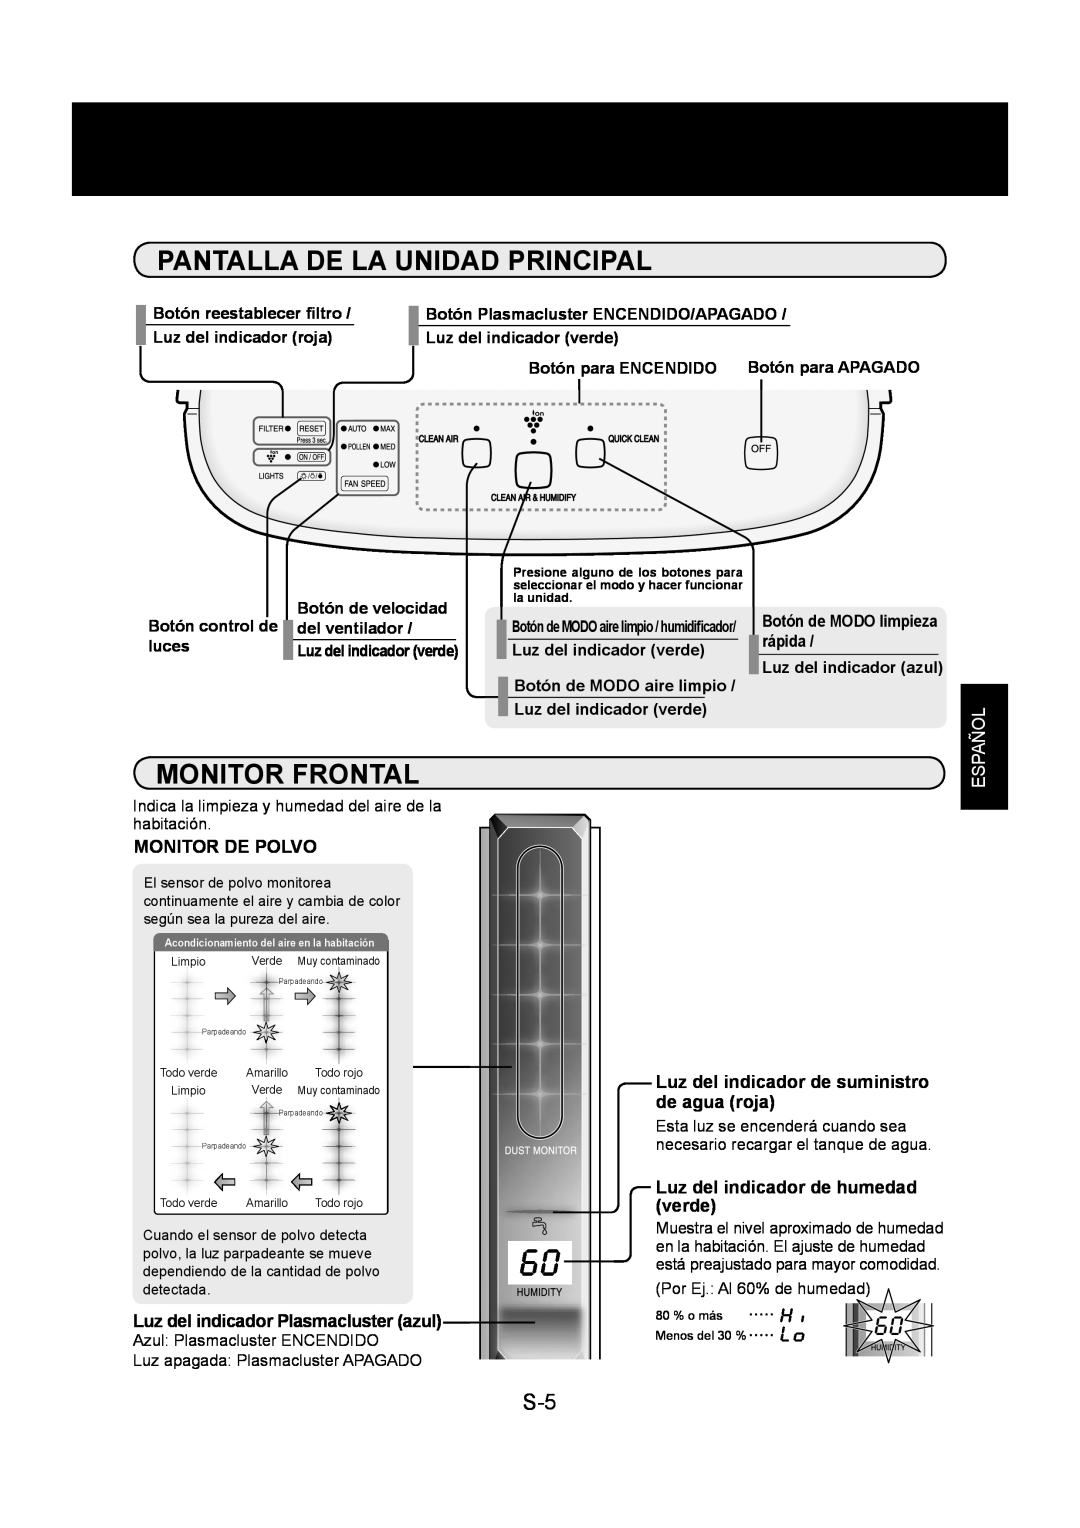 Sharp KC-860U Pantalla De La Unidad Principal, Monitor Frontal, Español, Botón reestablecer ﬁltro, Luz del indicador roja 